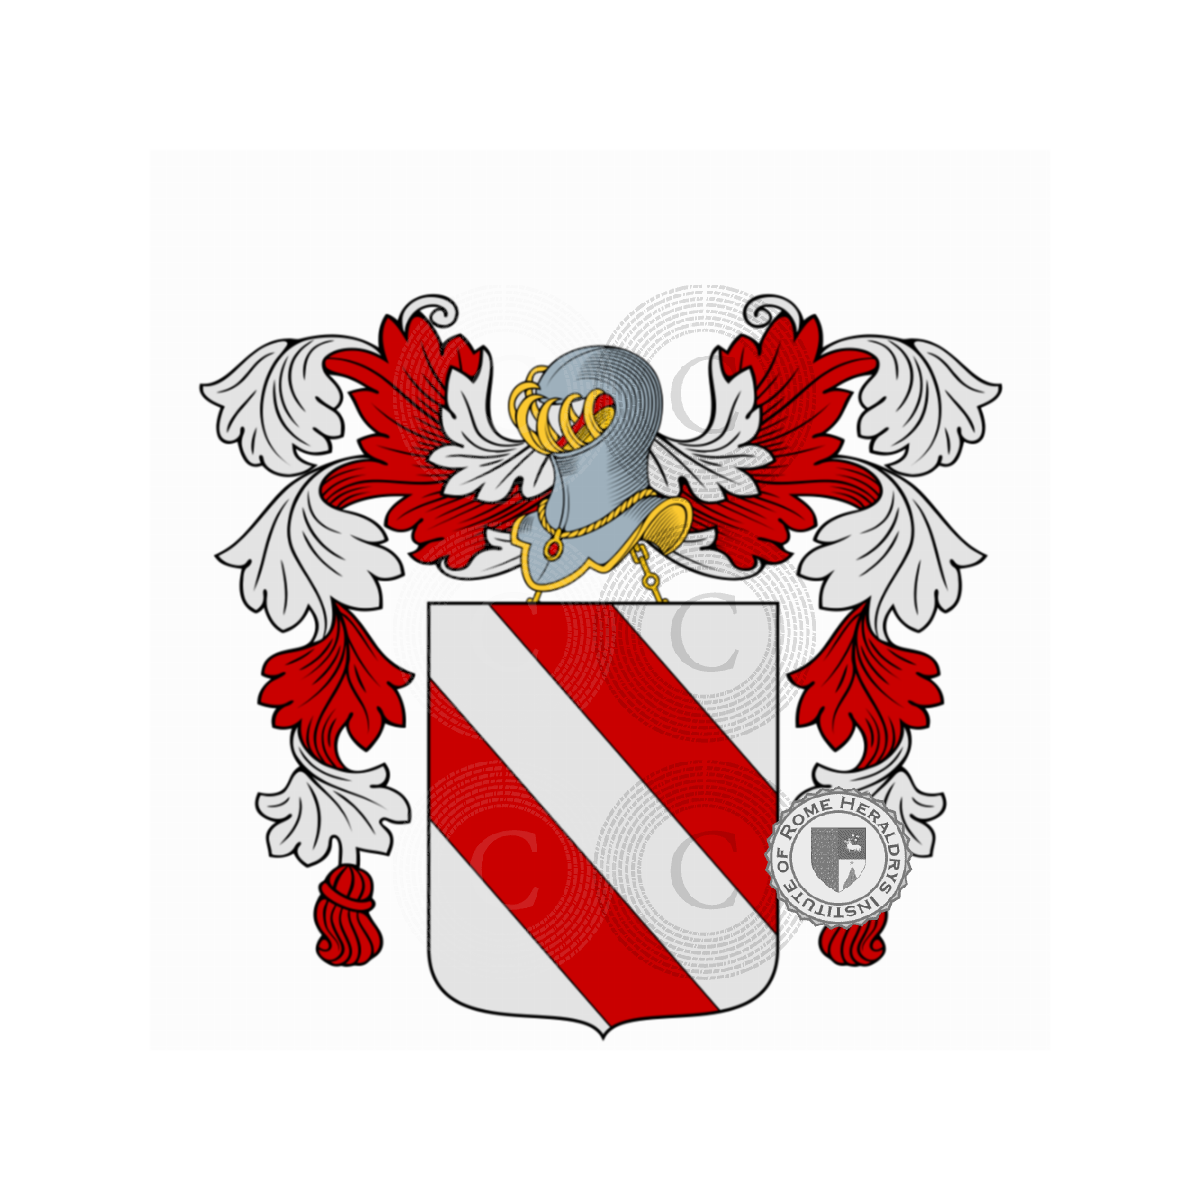 Coat of arms of familyAmigo